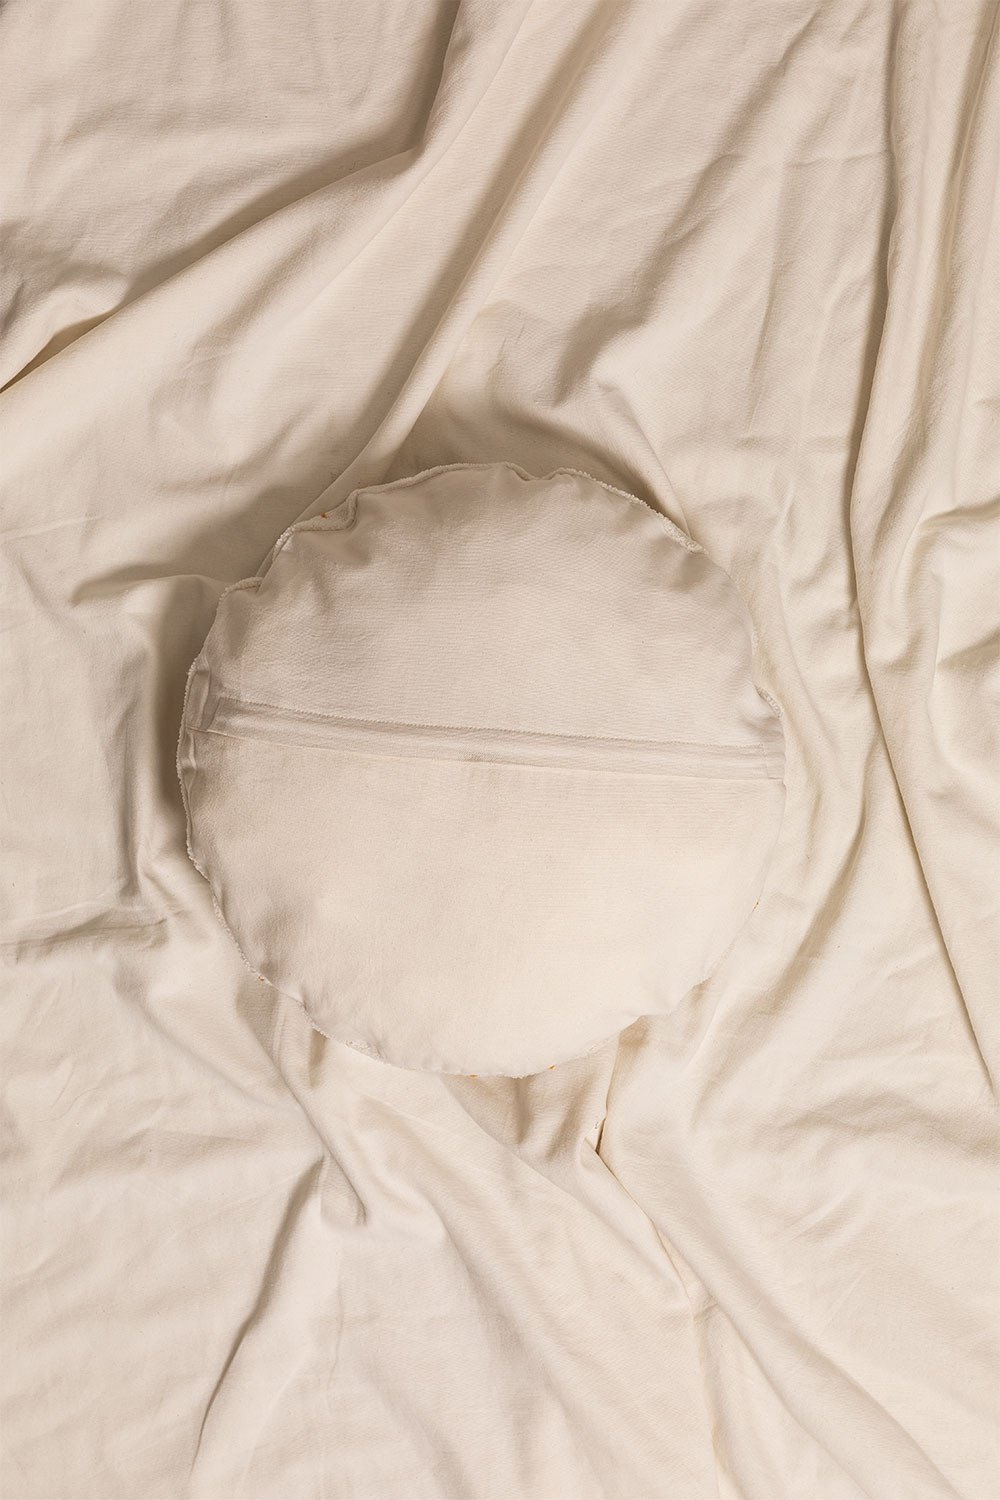 Cuscino rotondo in cotone (Ø40,5 cm) Aslan Kids, immagine della galleria 2